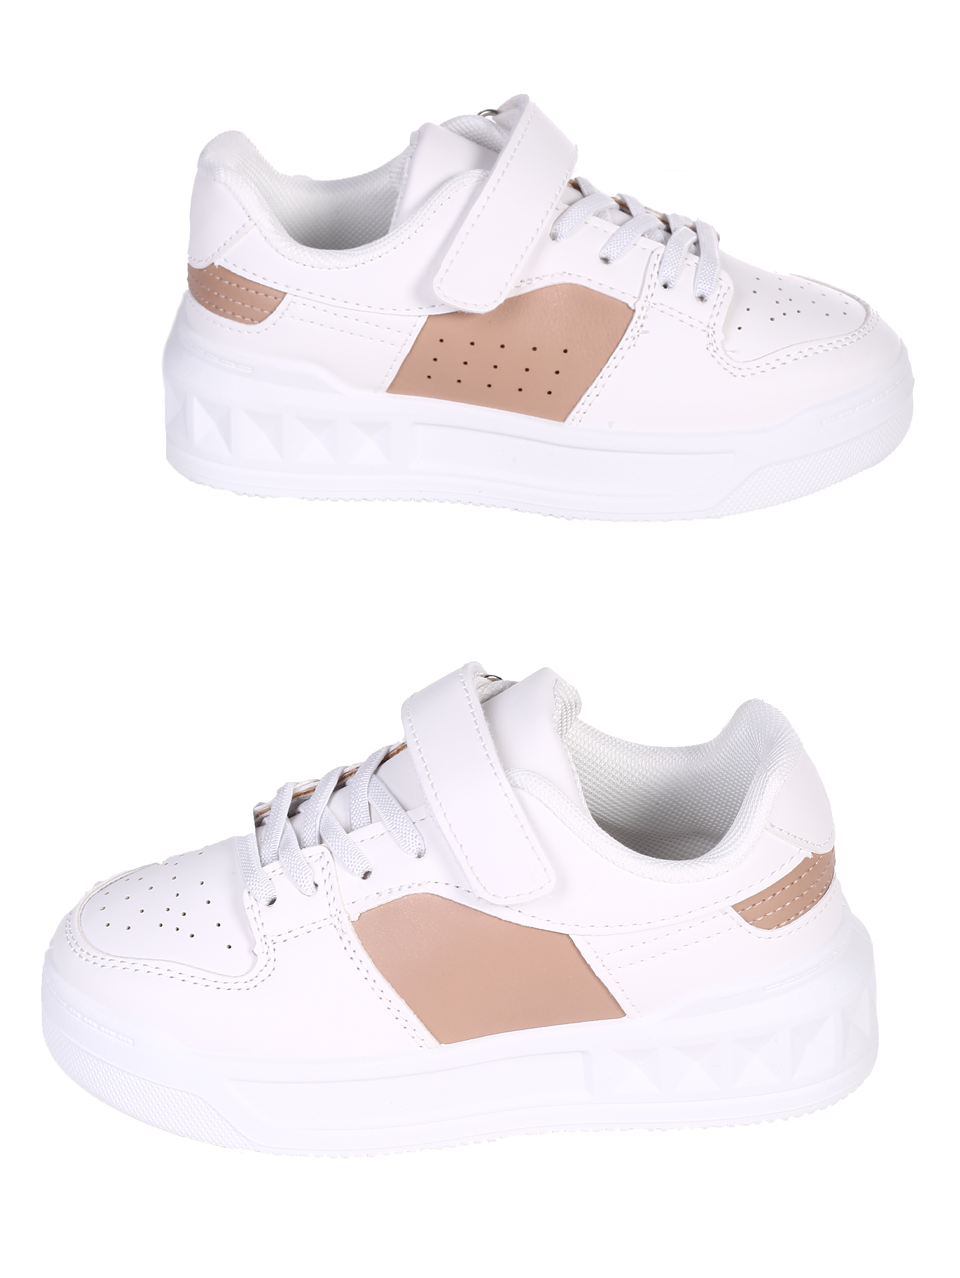 Комфортни детски обувки в бял/бежов цвят 18U-24082 white/beige